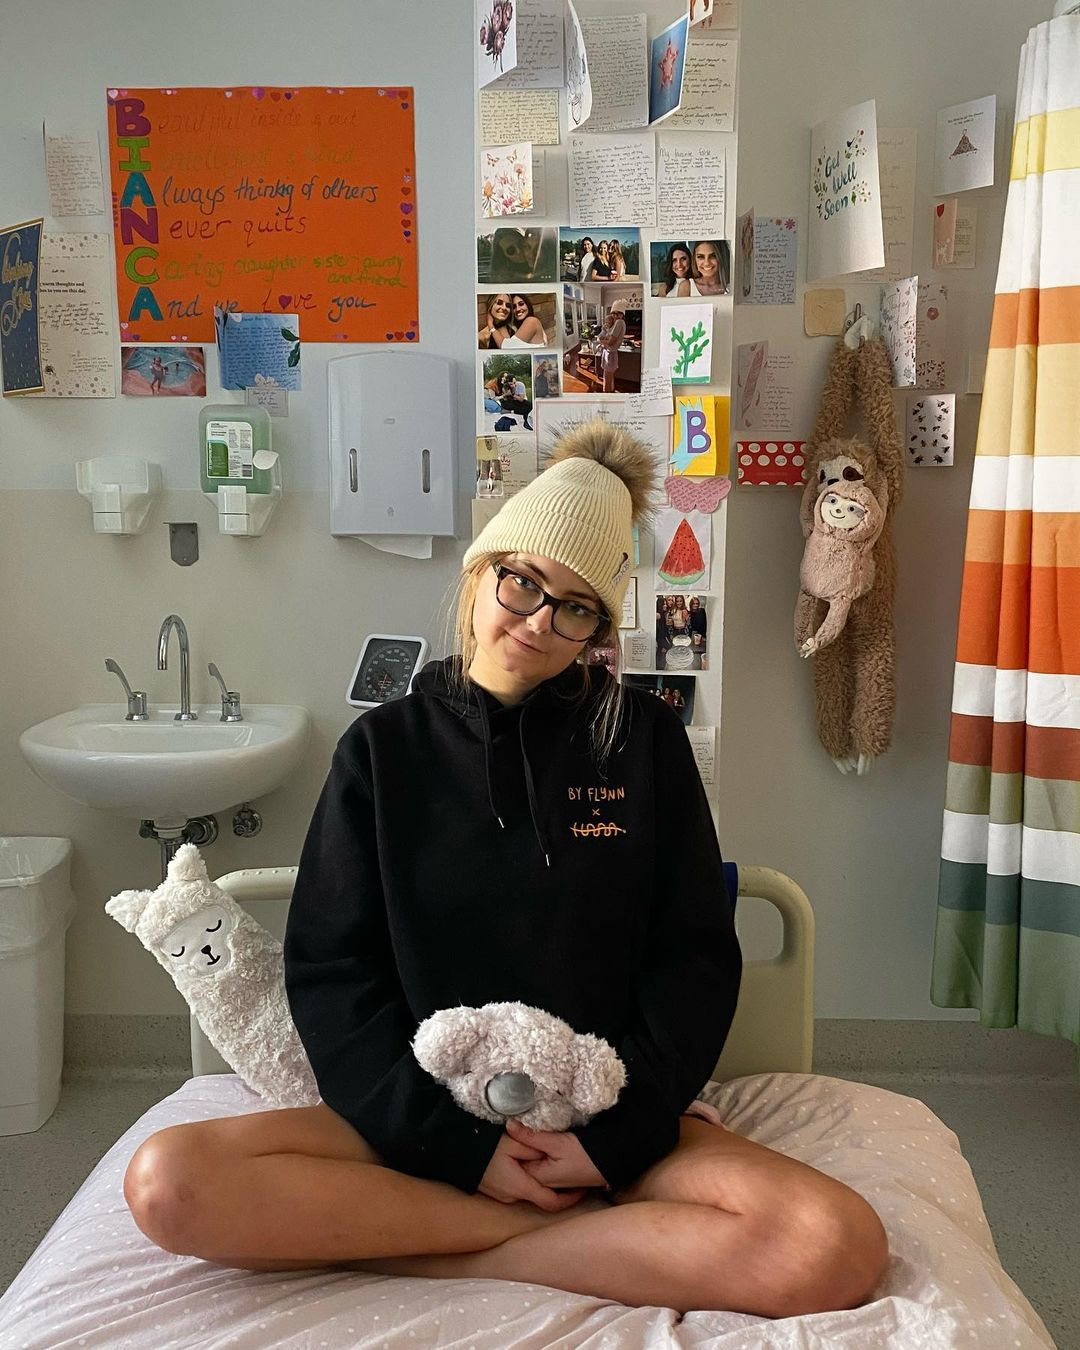 Bianca at the Royal North Shore Hospital following her diagnosis